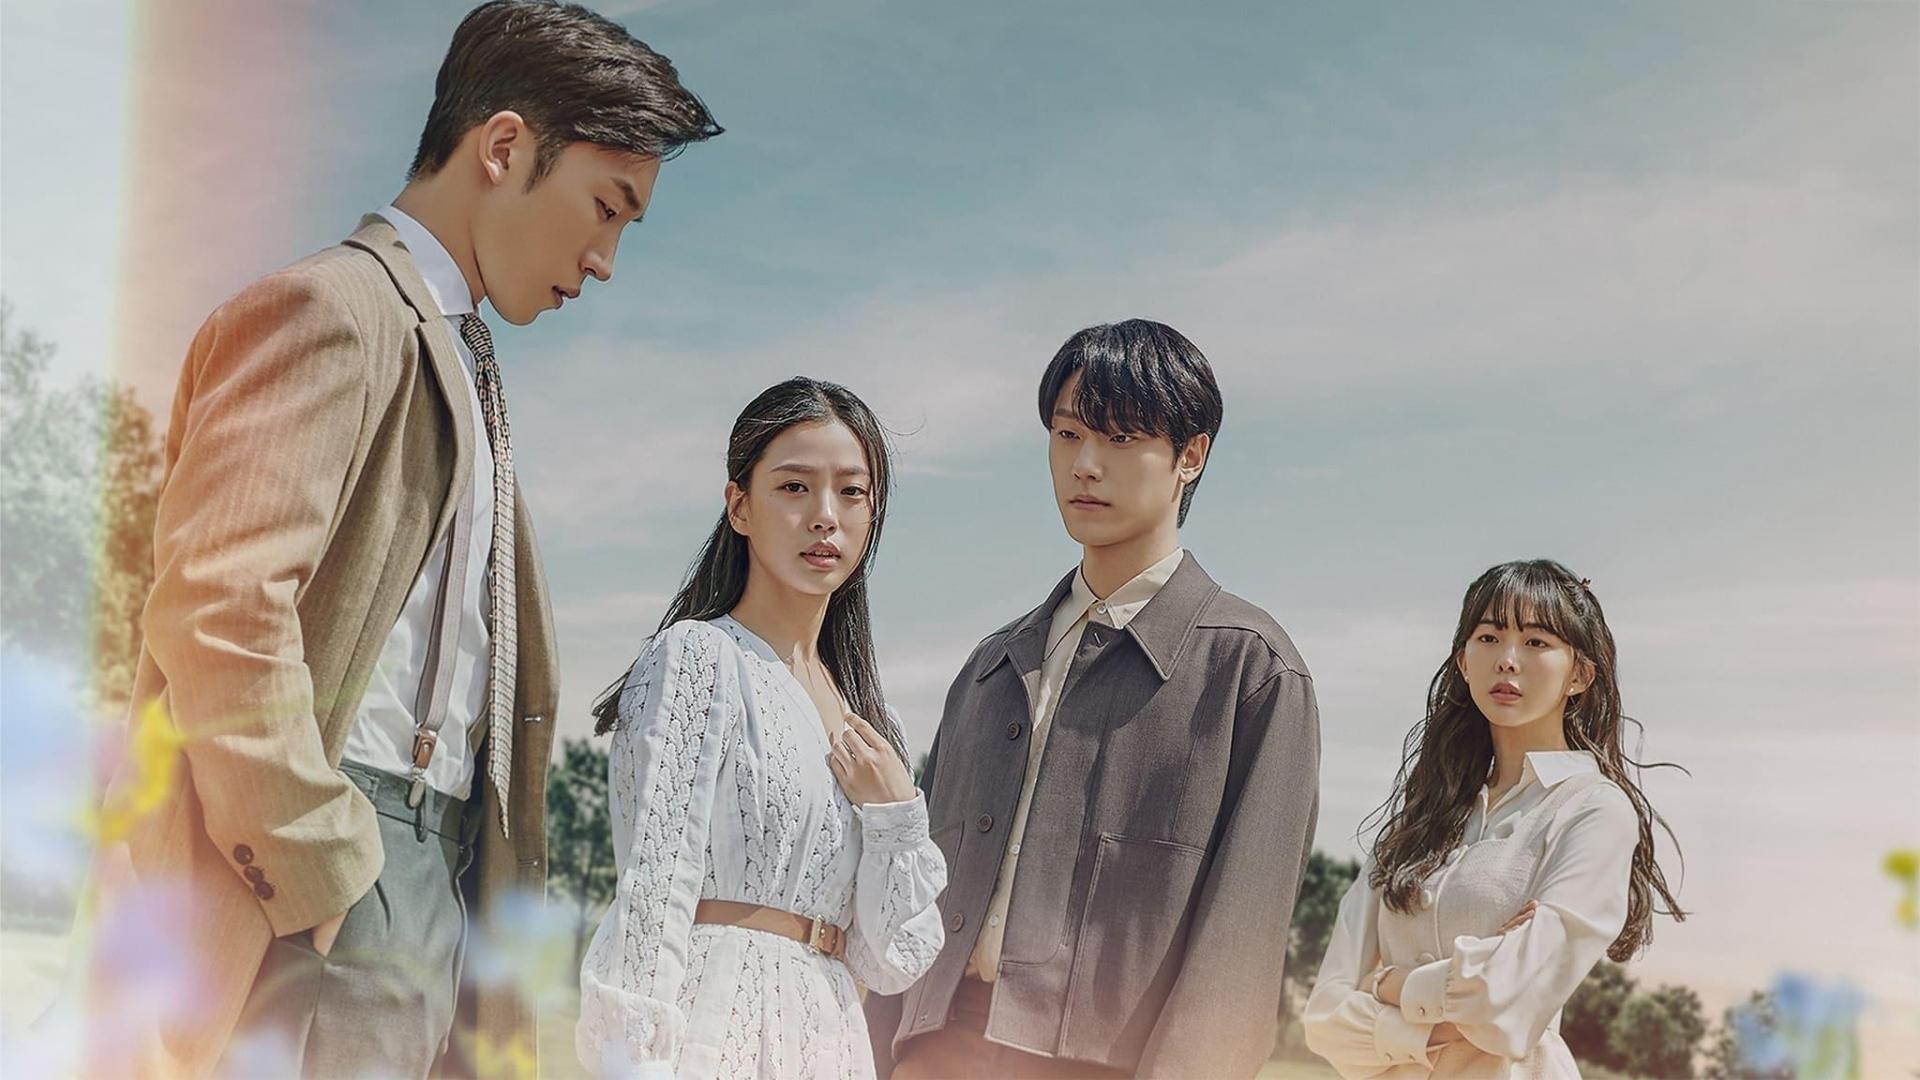 دانلود سریال کره ای Youth of May